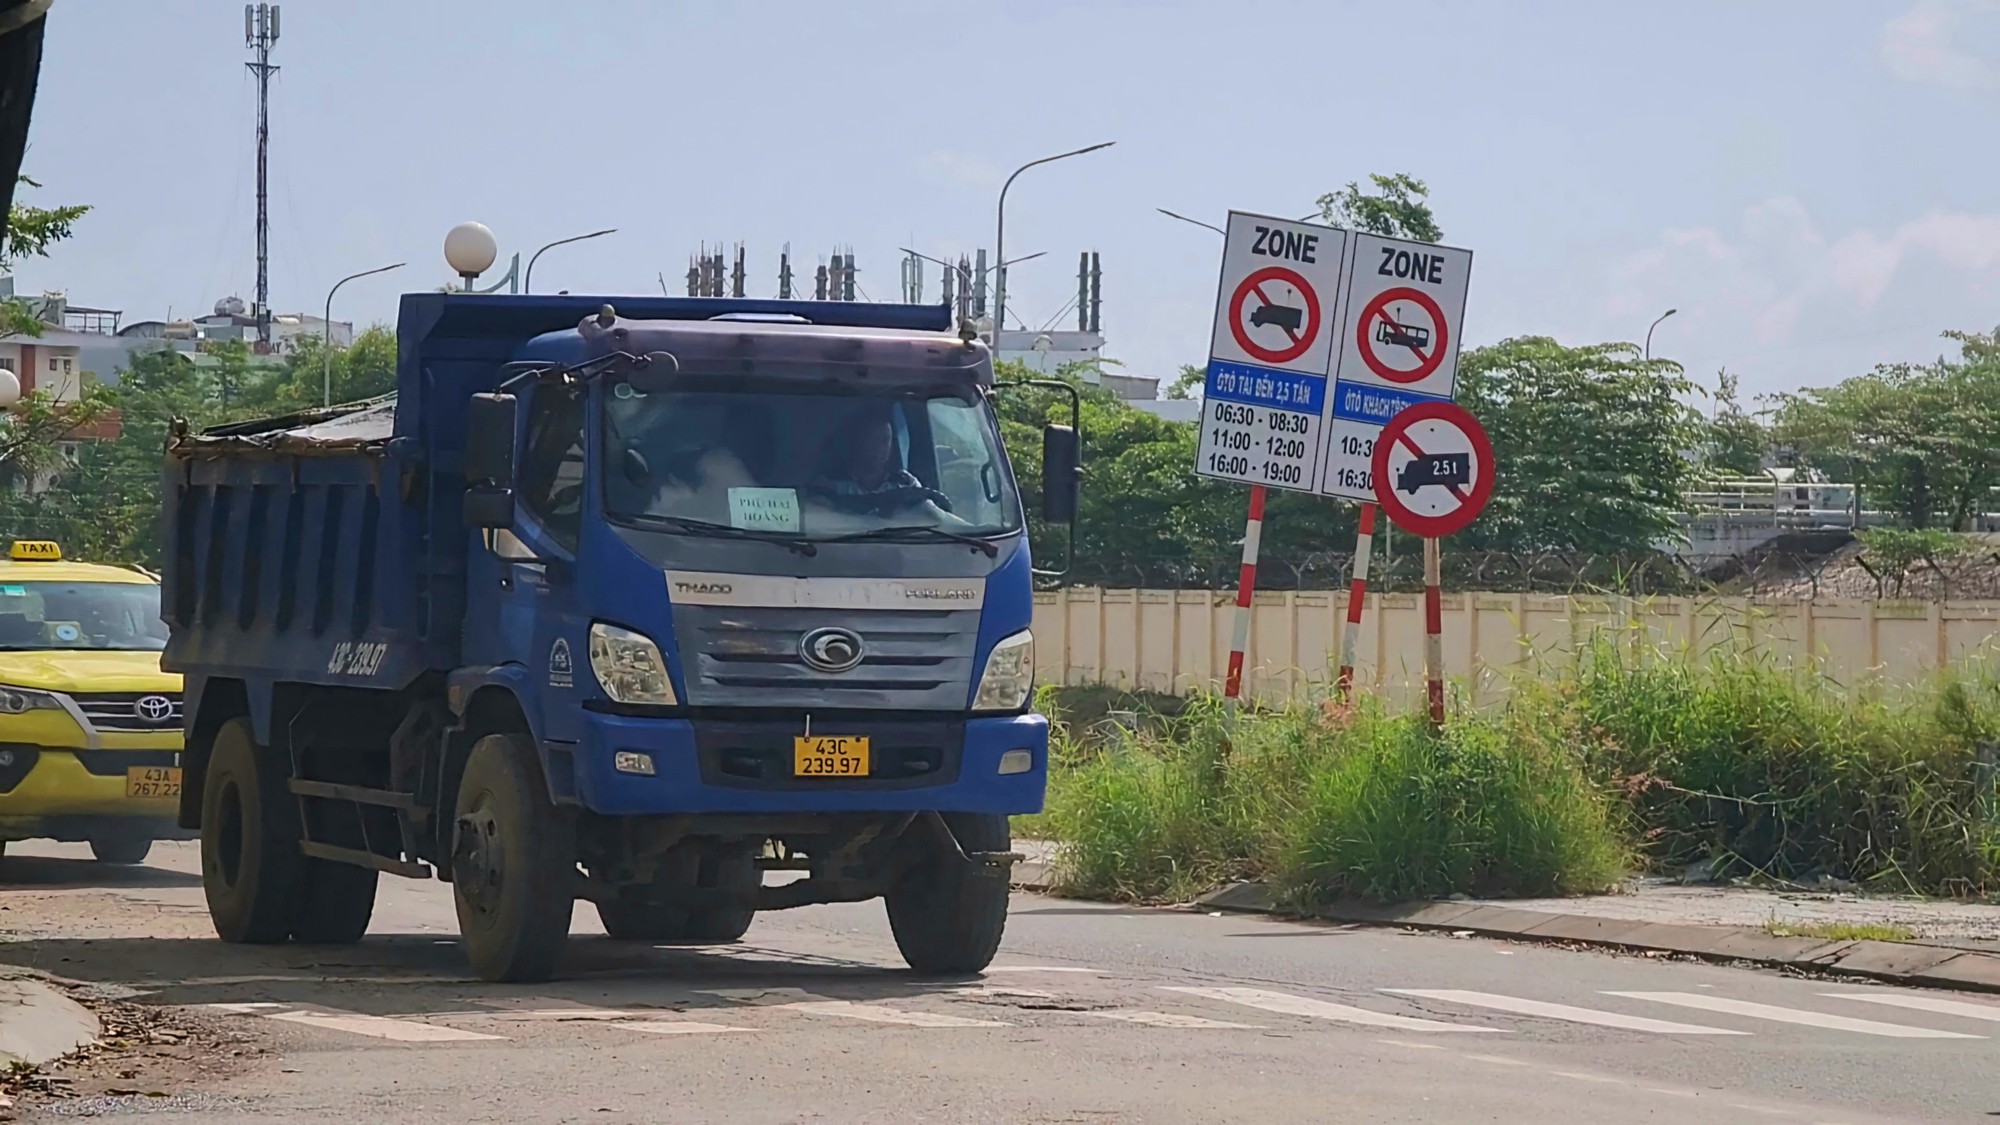 Phớt lờ biển báo, xe tải ồ ạt chạy vào đường cấm ở Đà Nẵng - Ảnh 1.